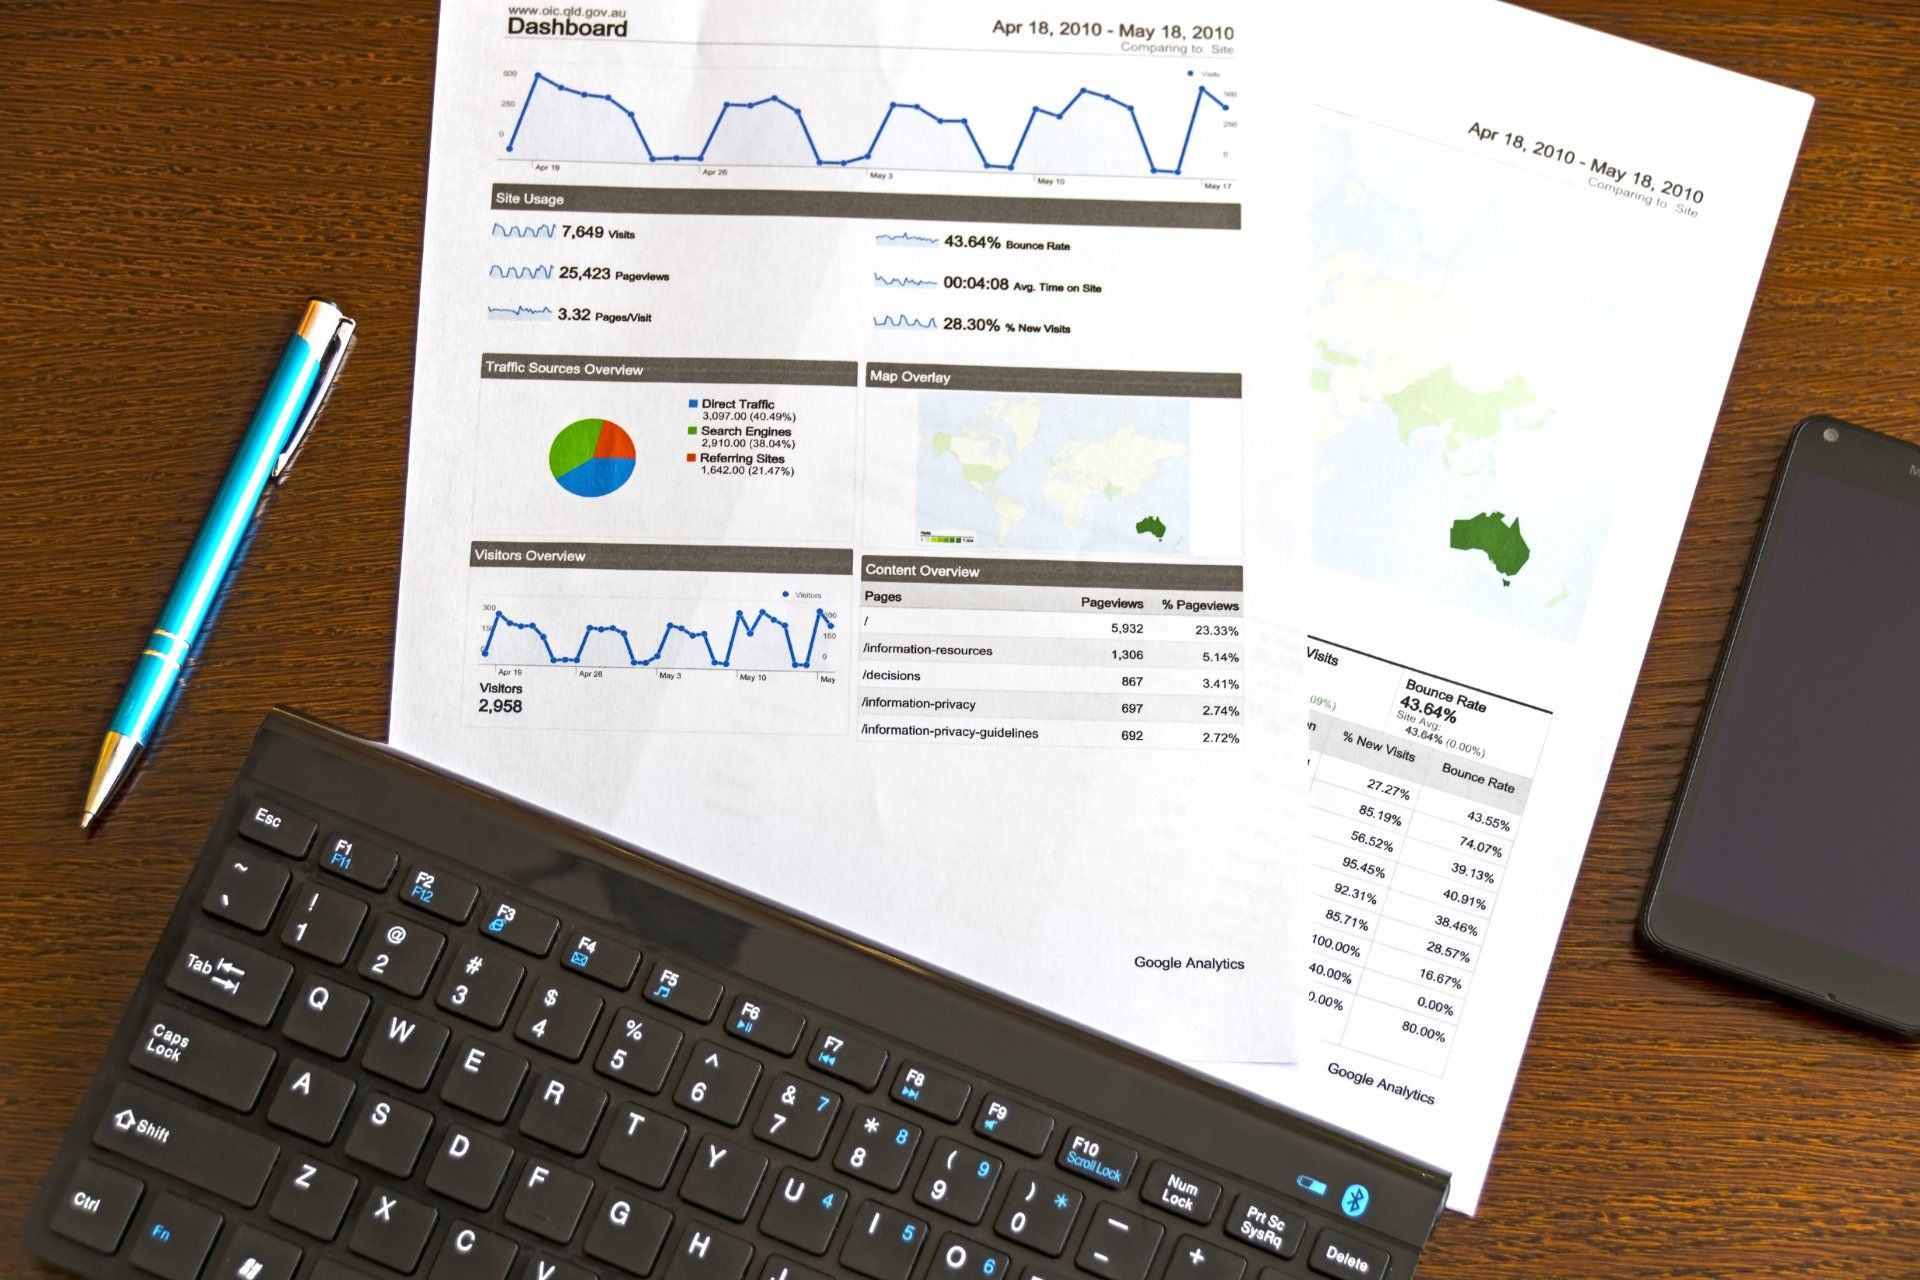 Google Analytics Dashboard displaying KPIs